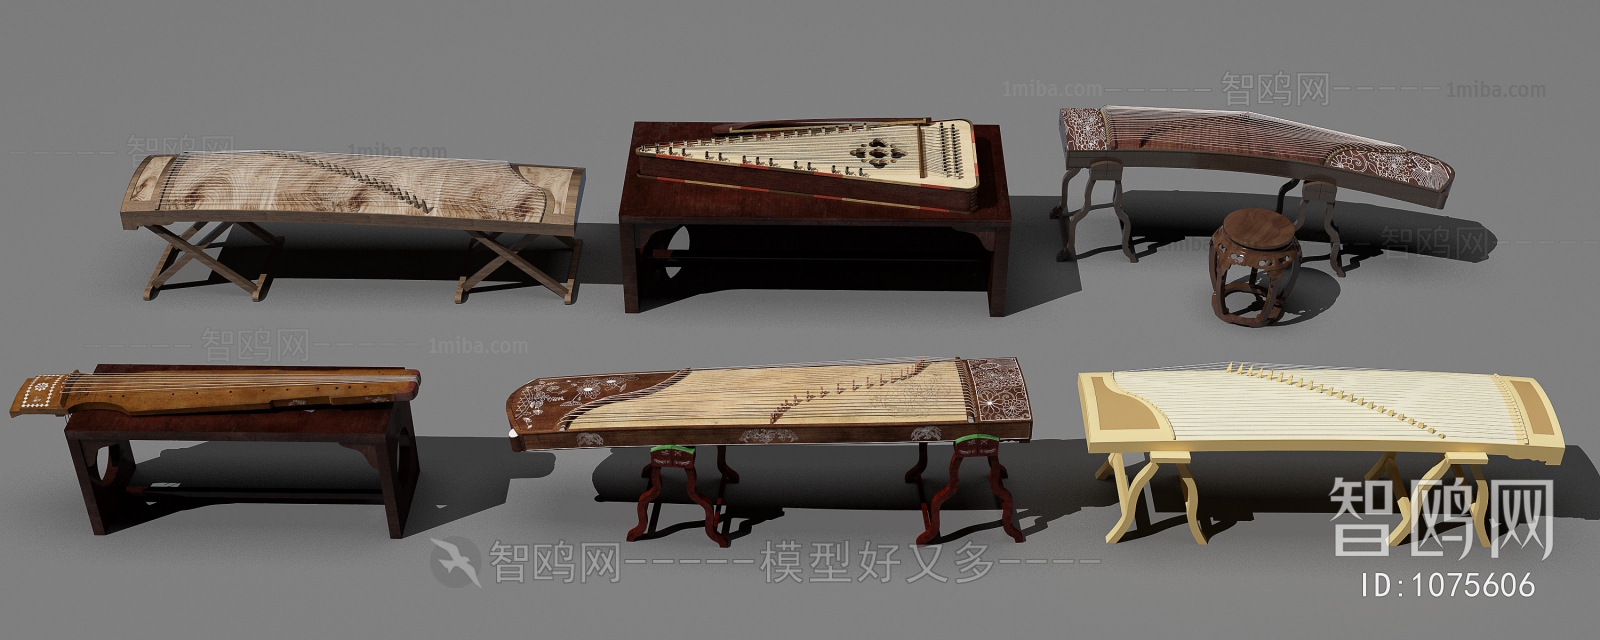 中式乐器画具 古筝